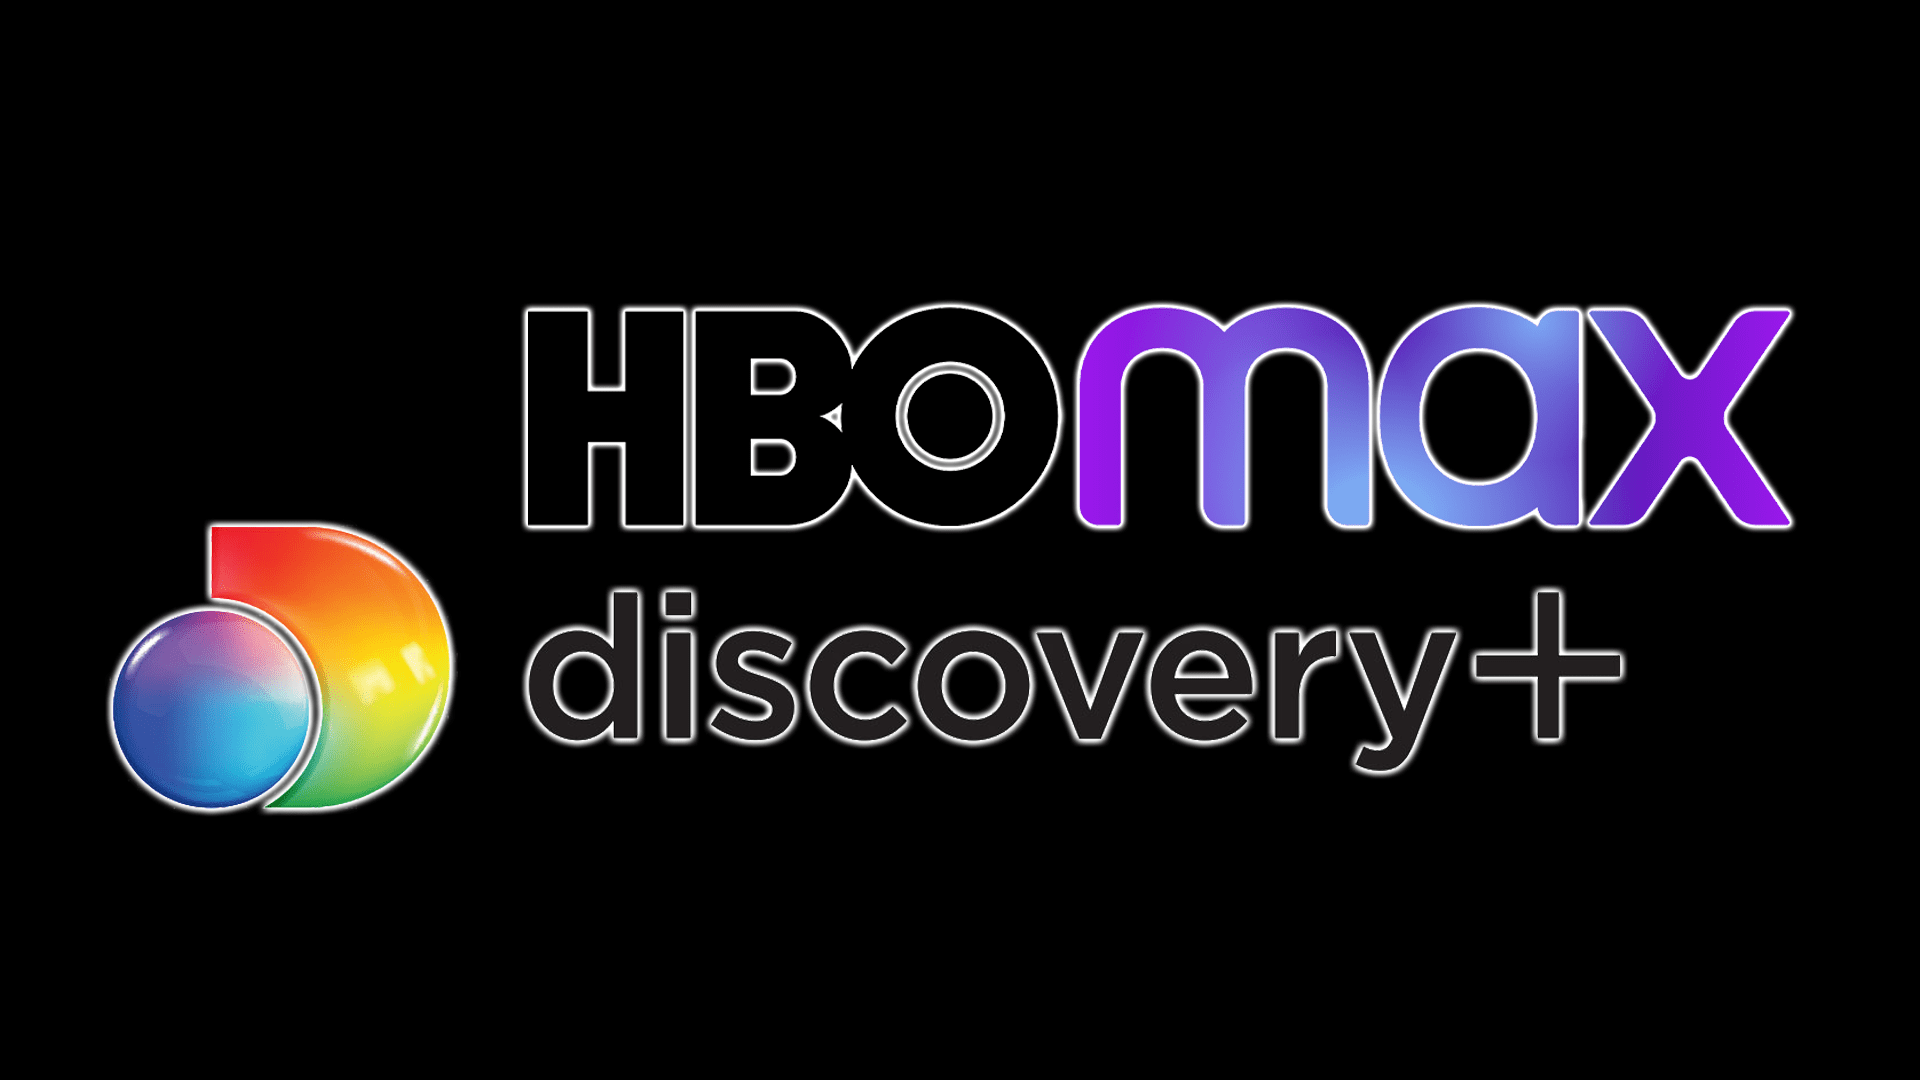 HBO Max kan kombineras med Discovery + för att skapa en ny tjänst